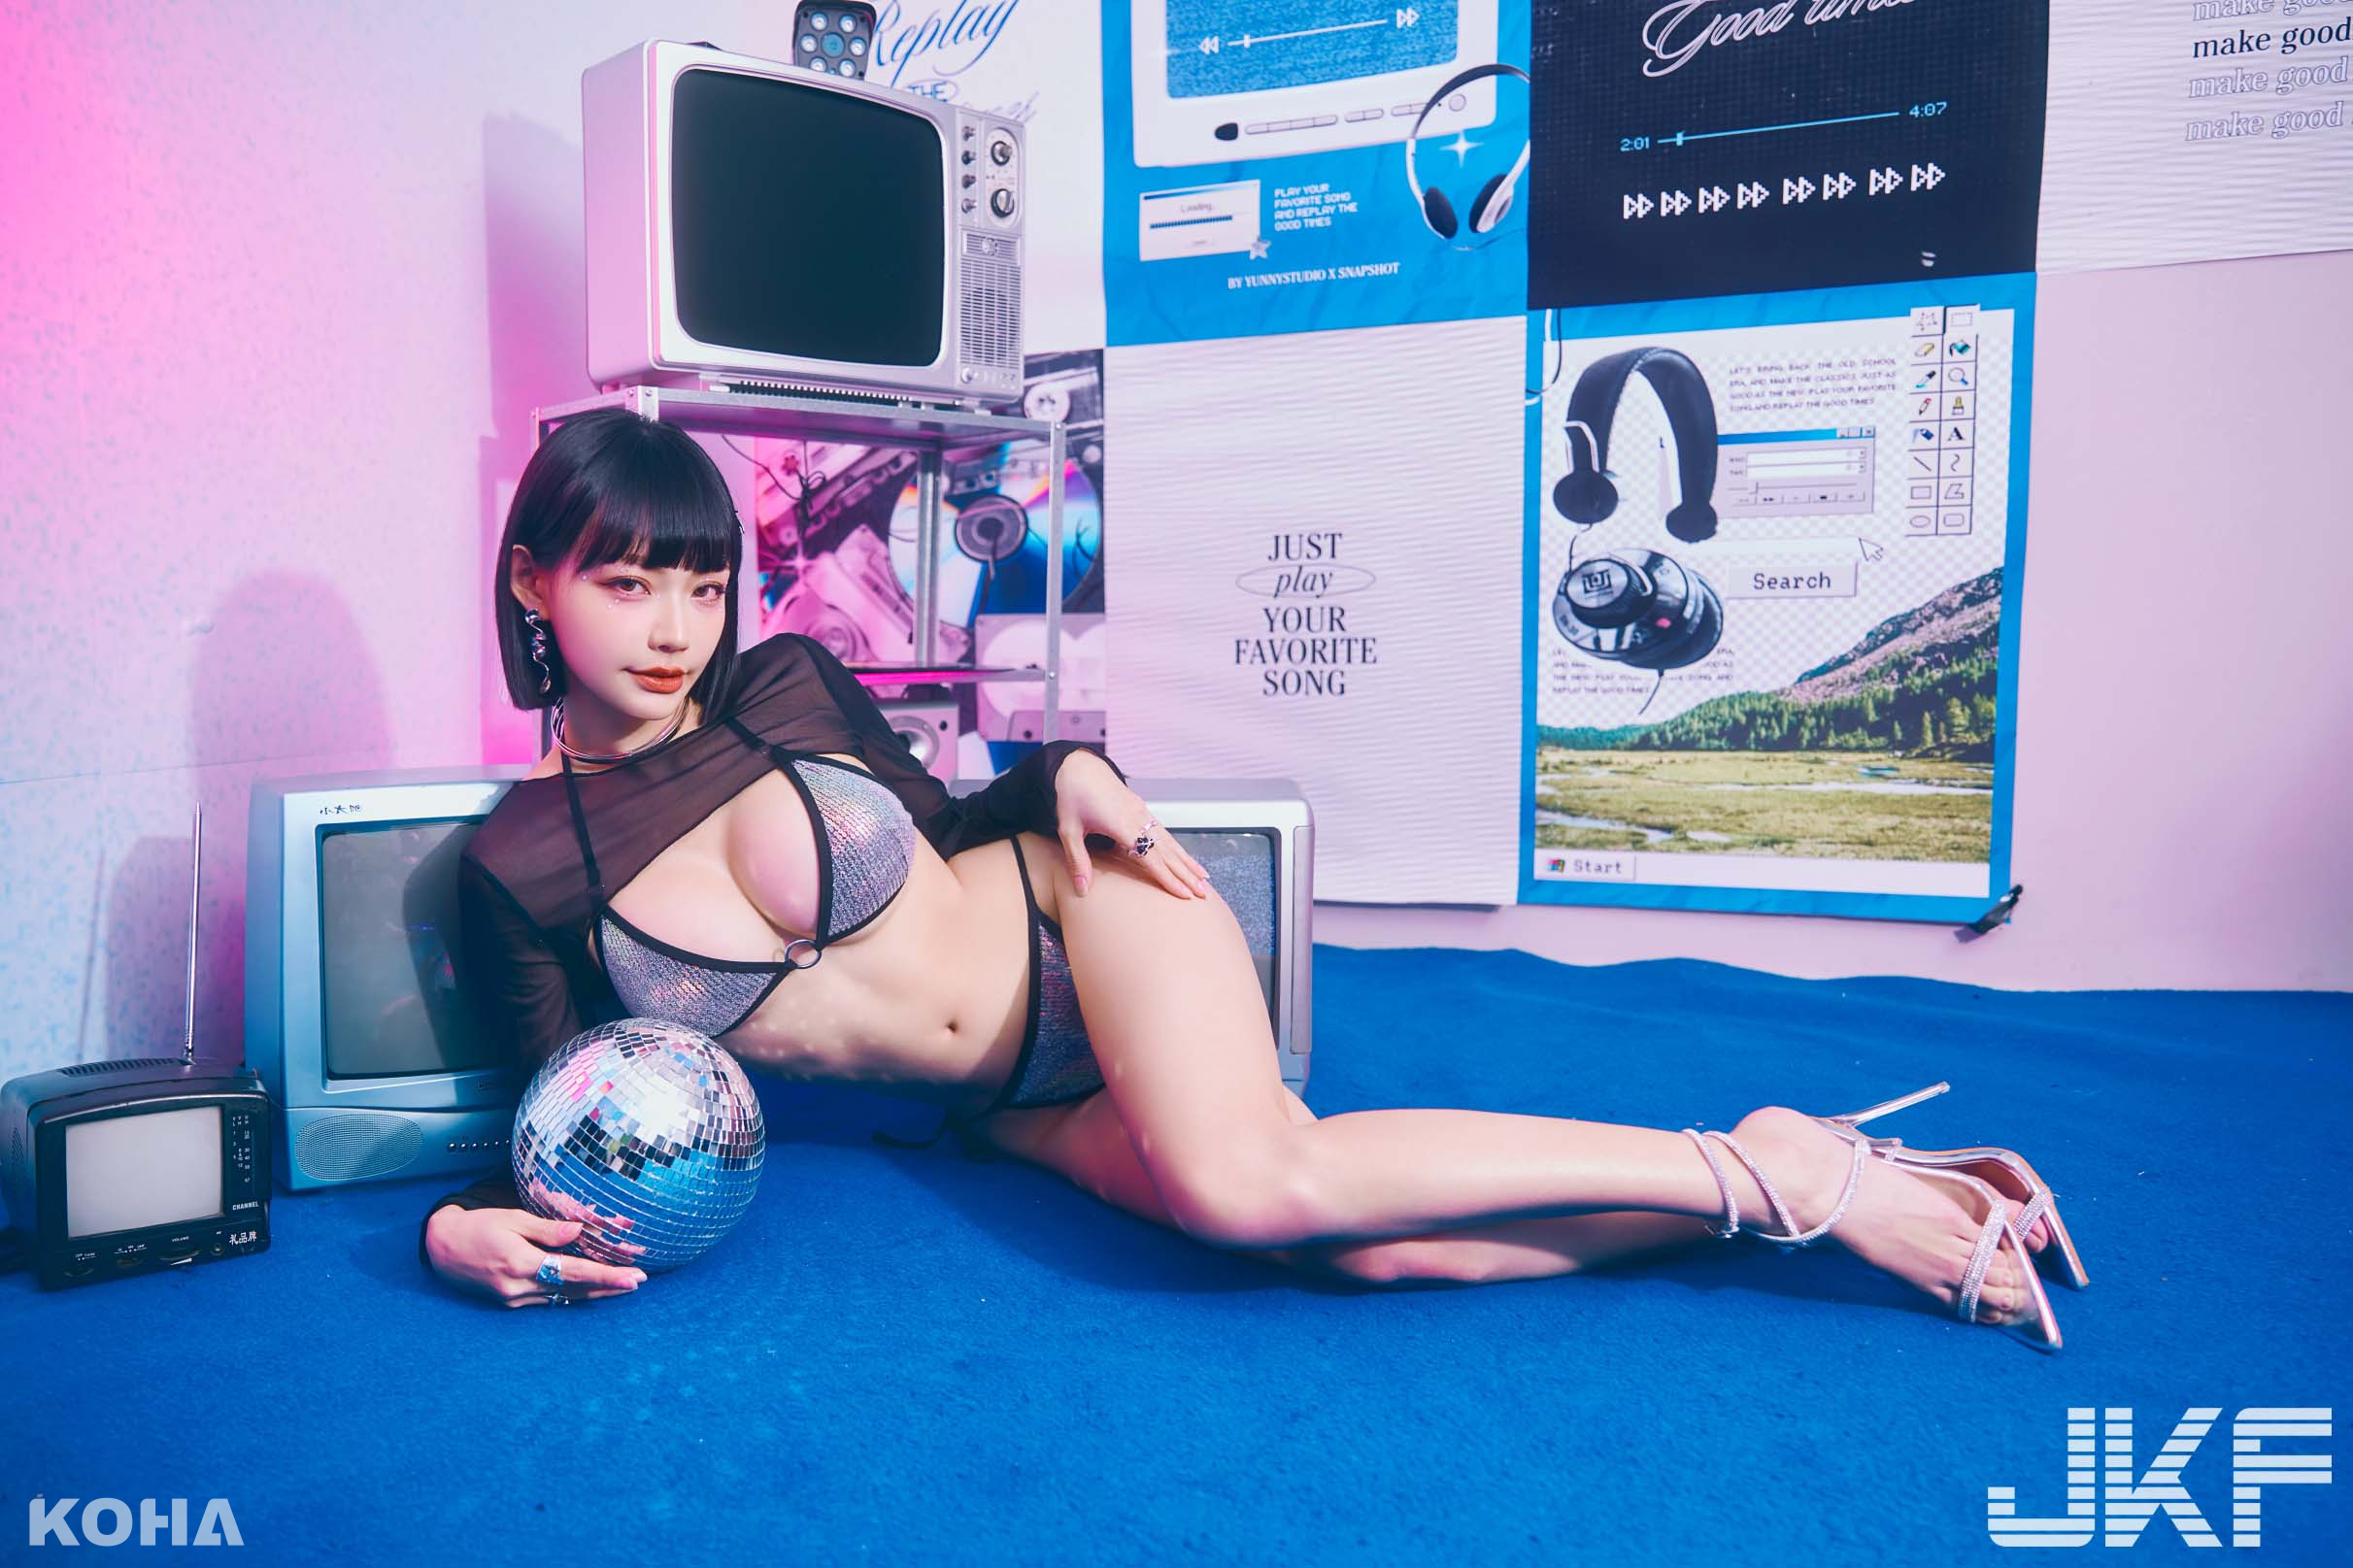 橫圖亞洲男性娛樂第一品牌JKF4月封面女星子涵 呈現反差萌